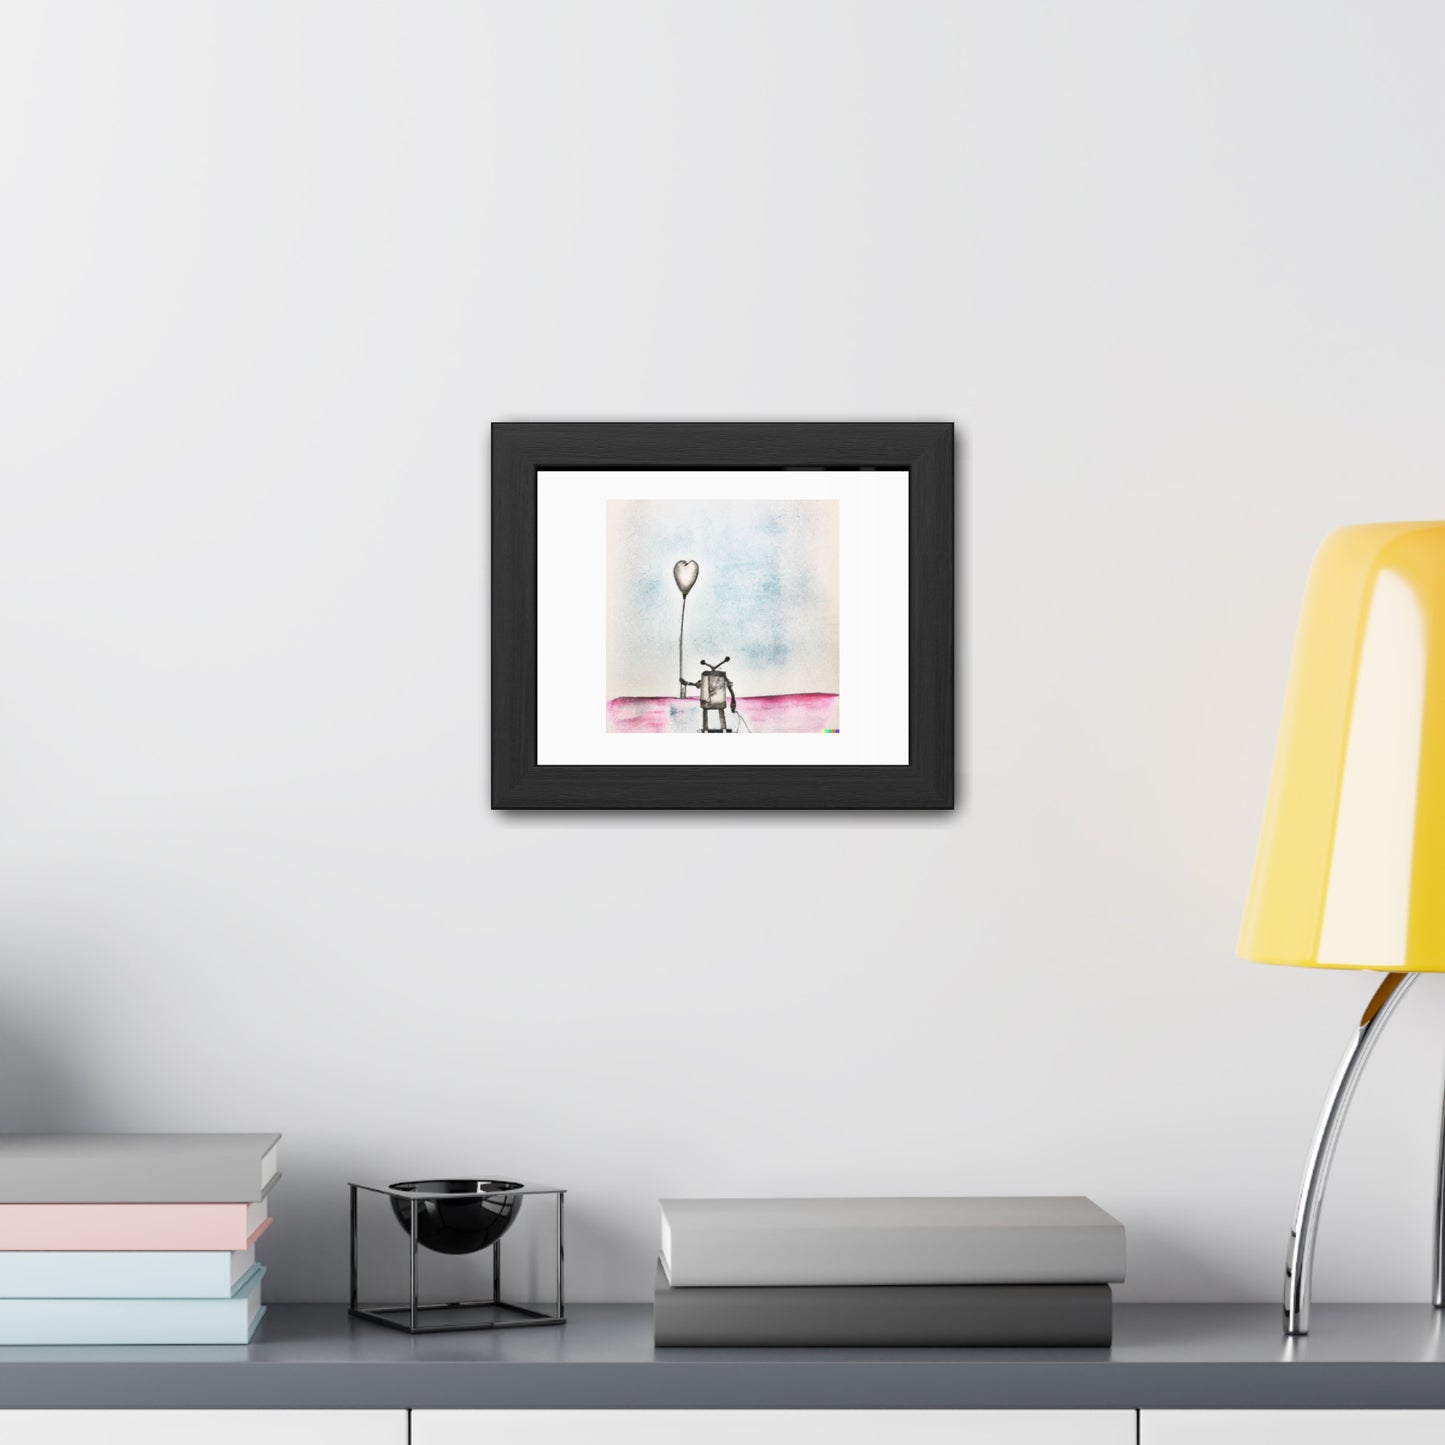 Art abstrait au crayon et à l'aquarelle d'un robot solitaire 'Conçu par AI' Poster encadré en bois en papier mat classique